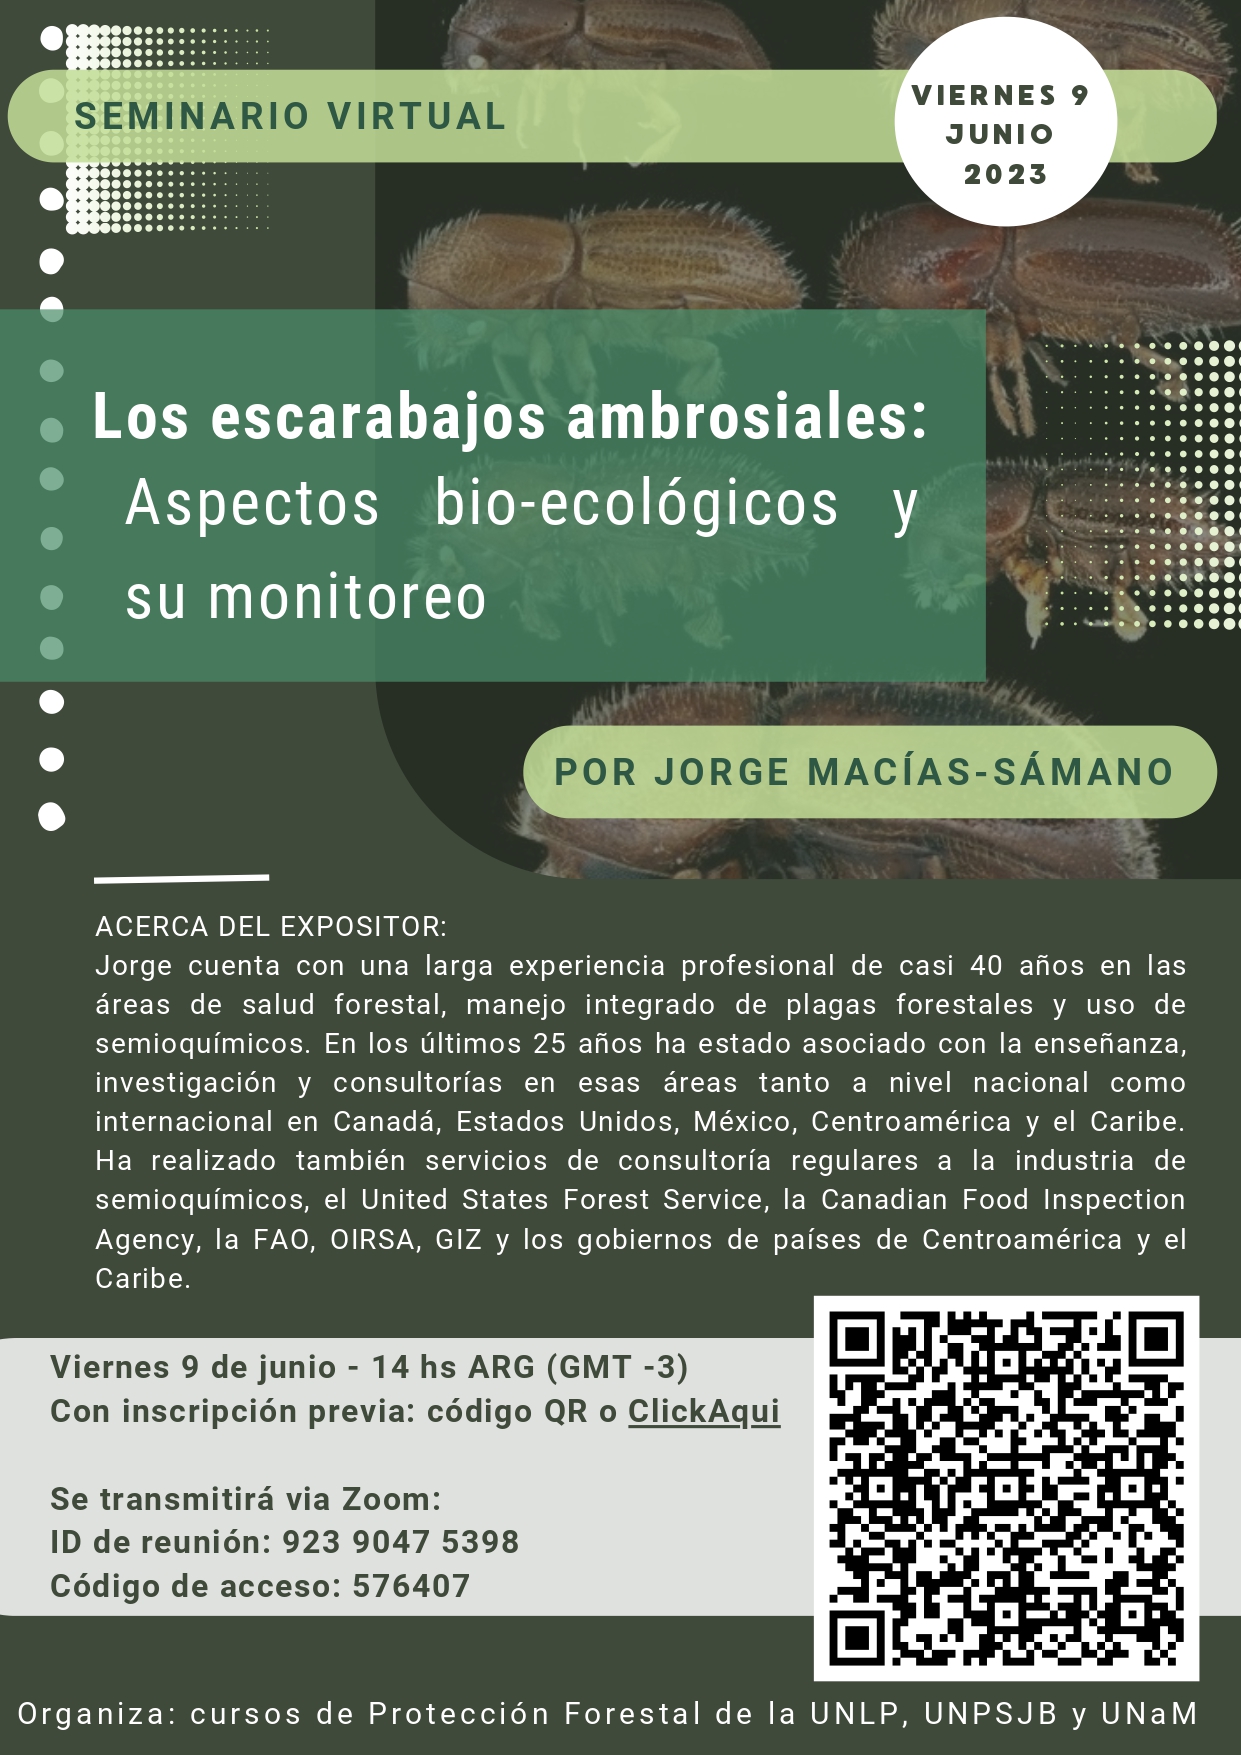  Encuentro virtual entre estudiantes forestales y docentes,en el marco del seminario “Los escarabajos ambrosiales: Aspectos bio-ecológicos y su monitoreo” 